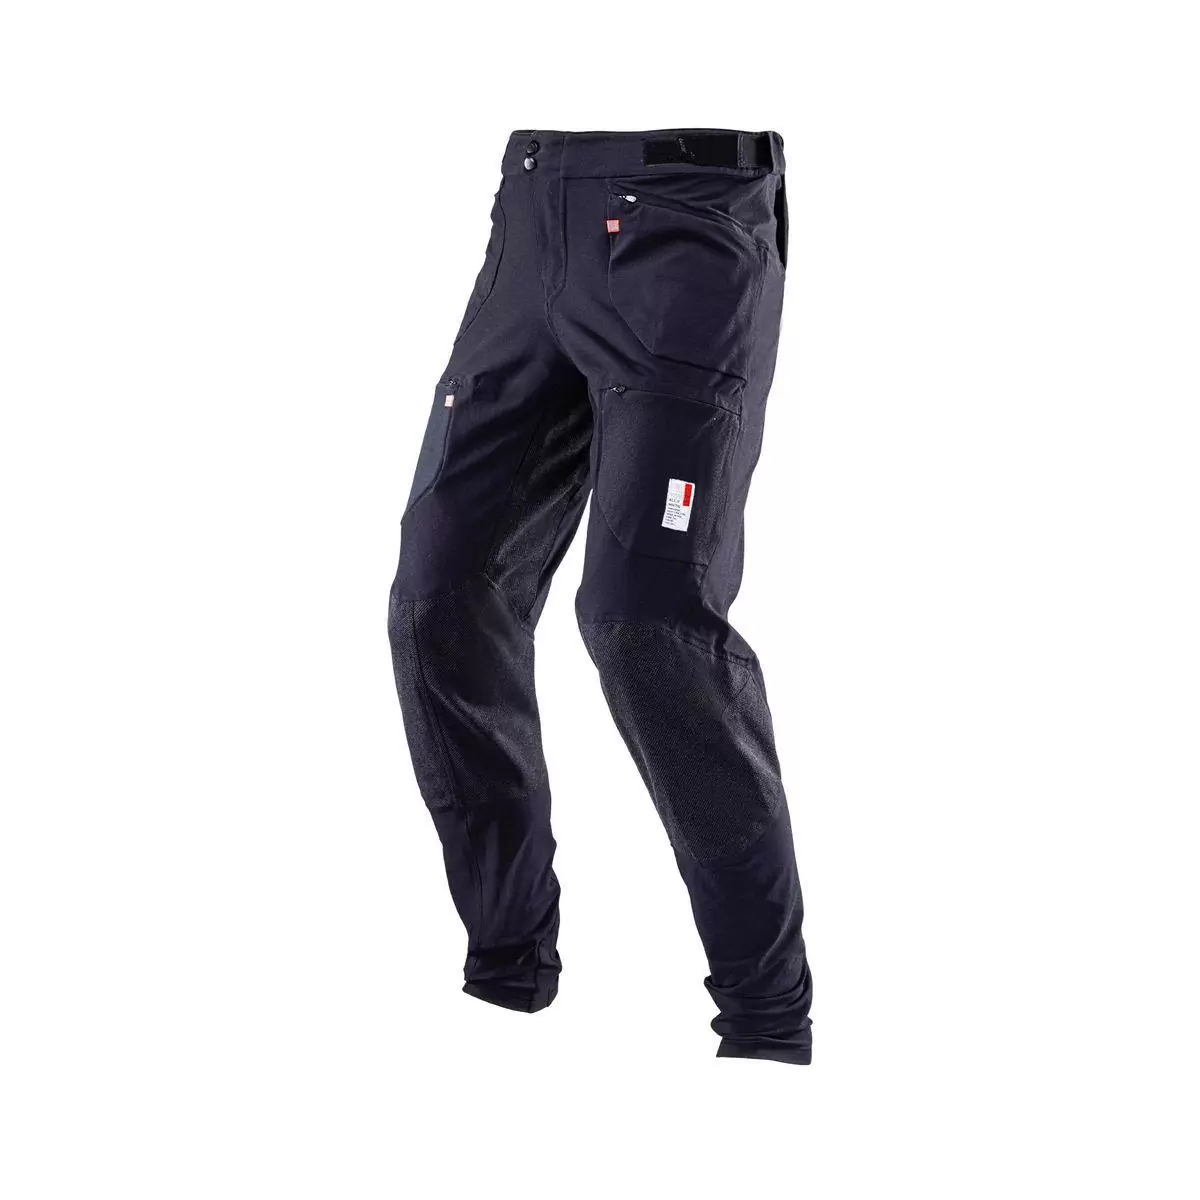 Pantalon VTT Allmtn 4.0 Long Noir Taille XS - image